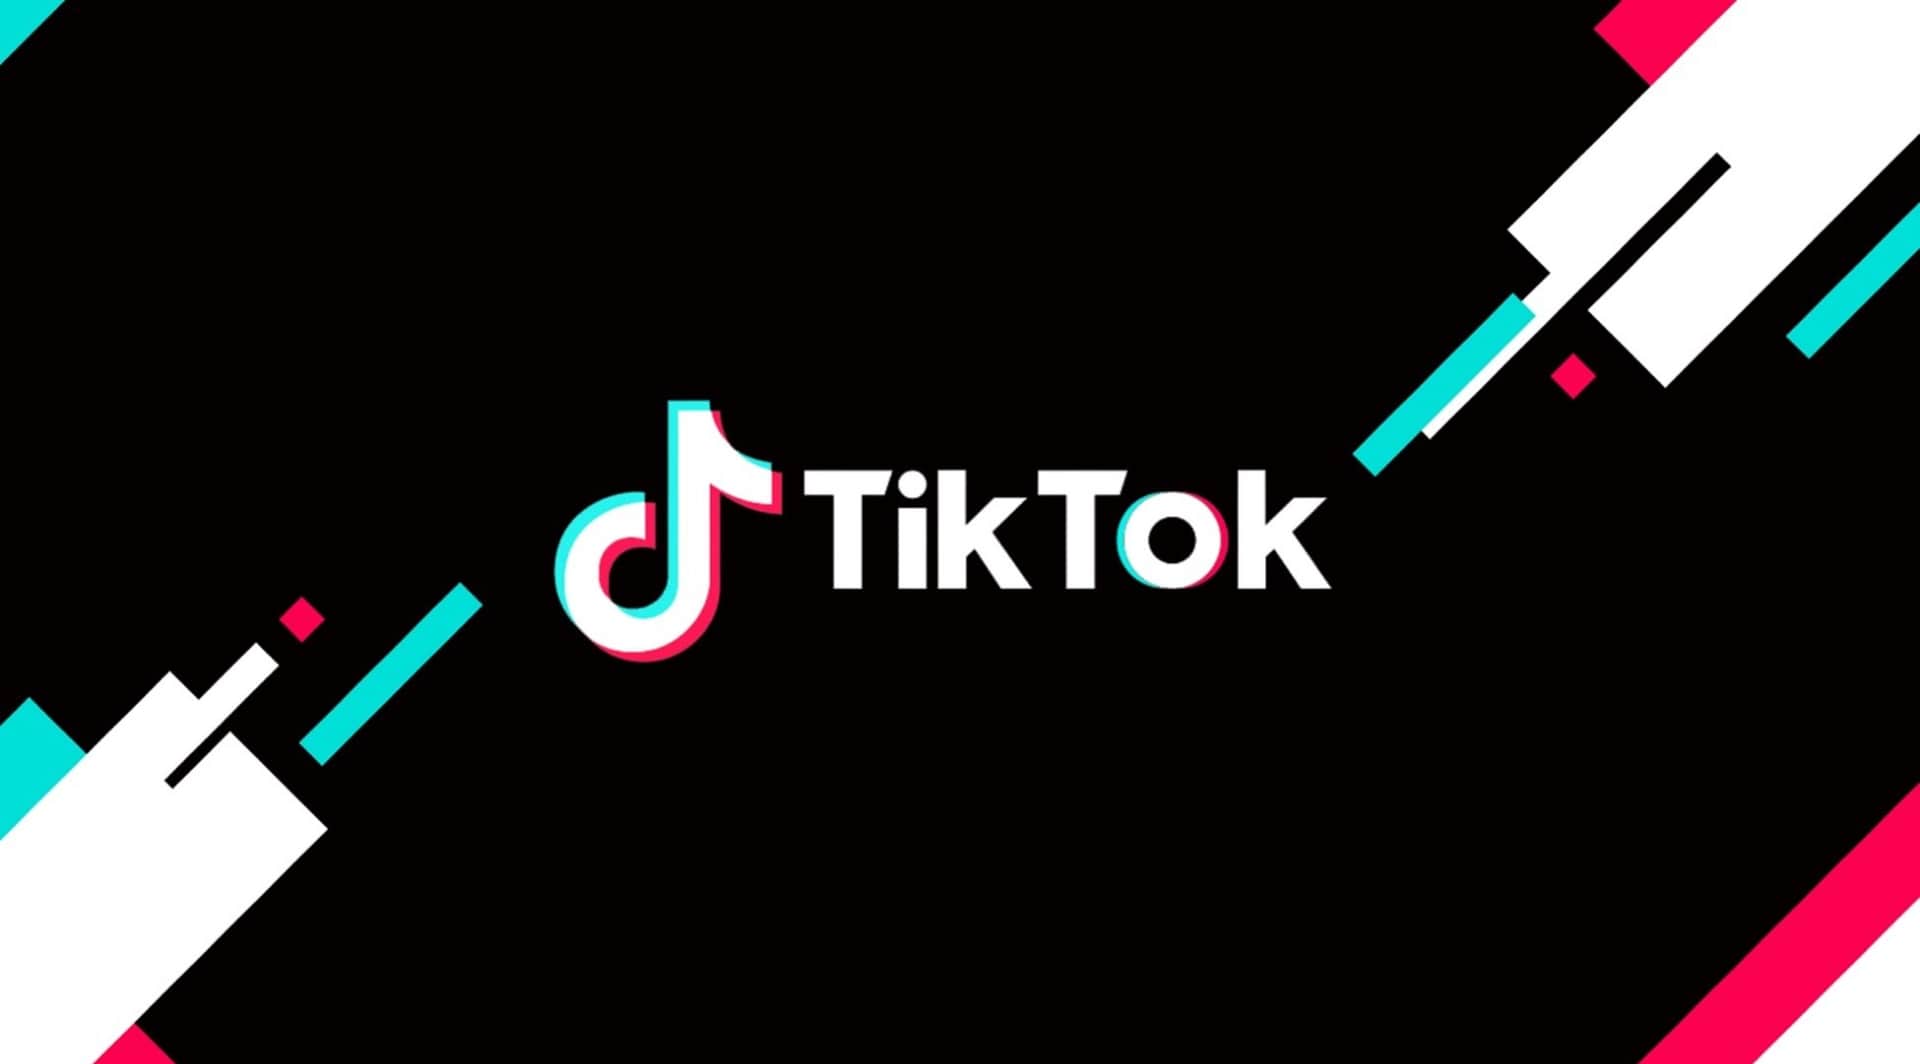 La nueva herramienta de TikTok para captar leads ya es oficial